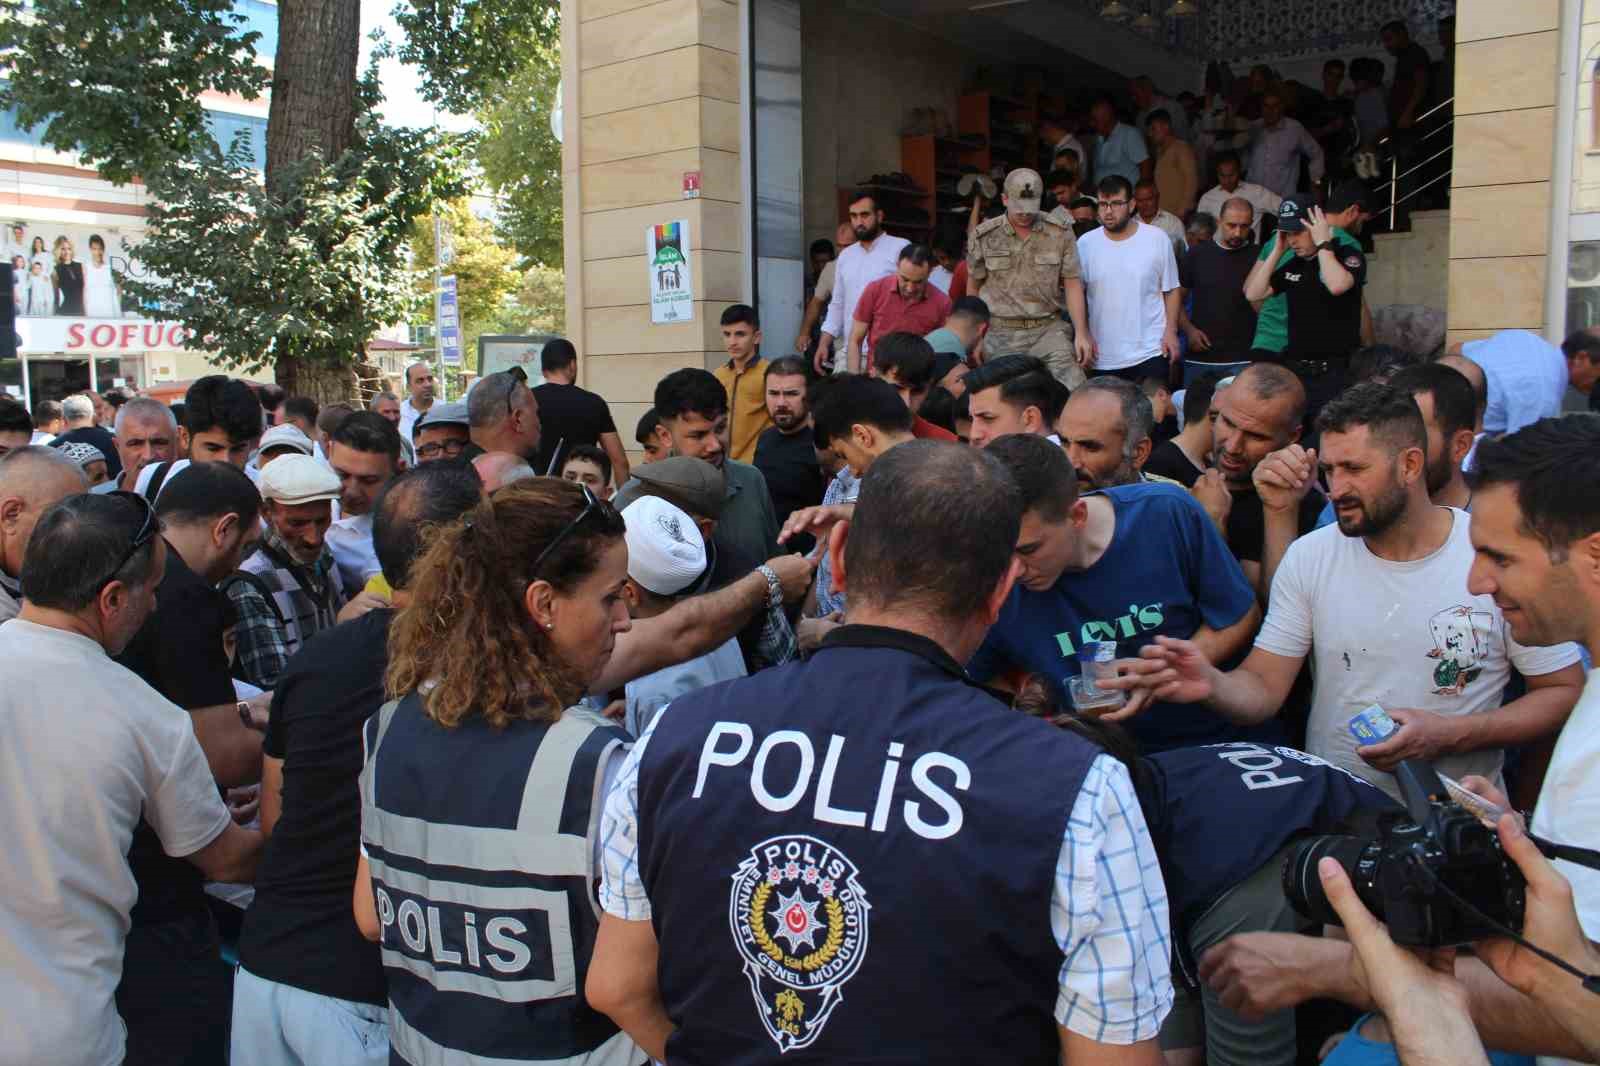 13 Şehit Polis Adına Mevlit Okundu